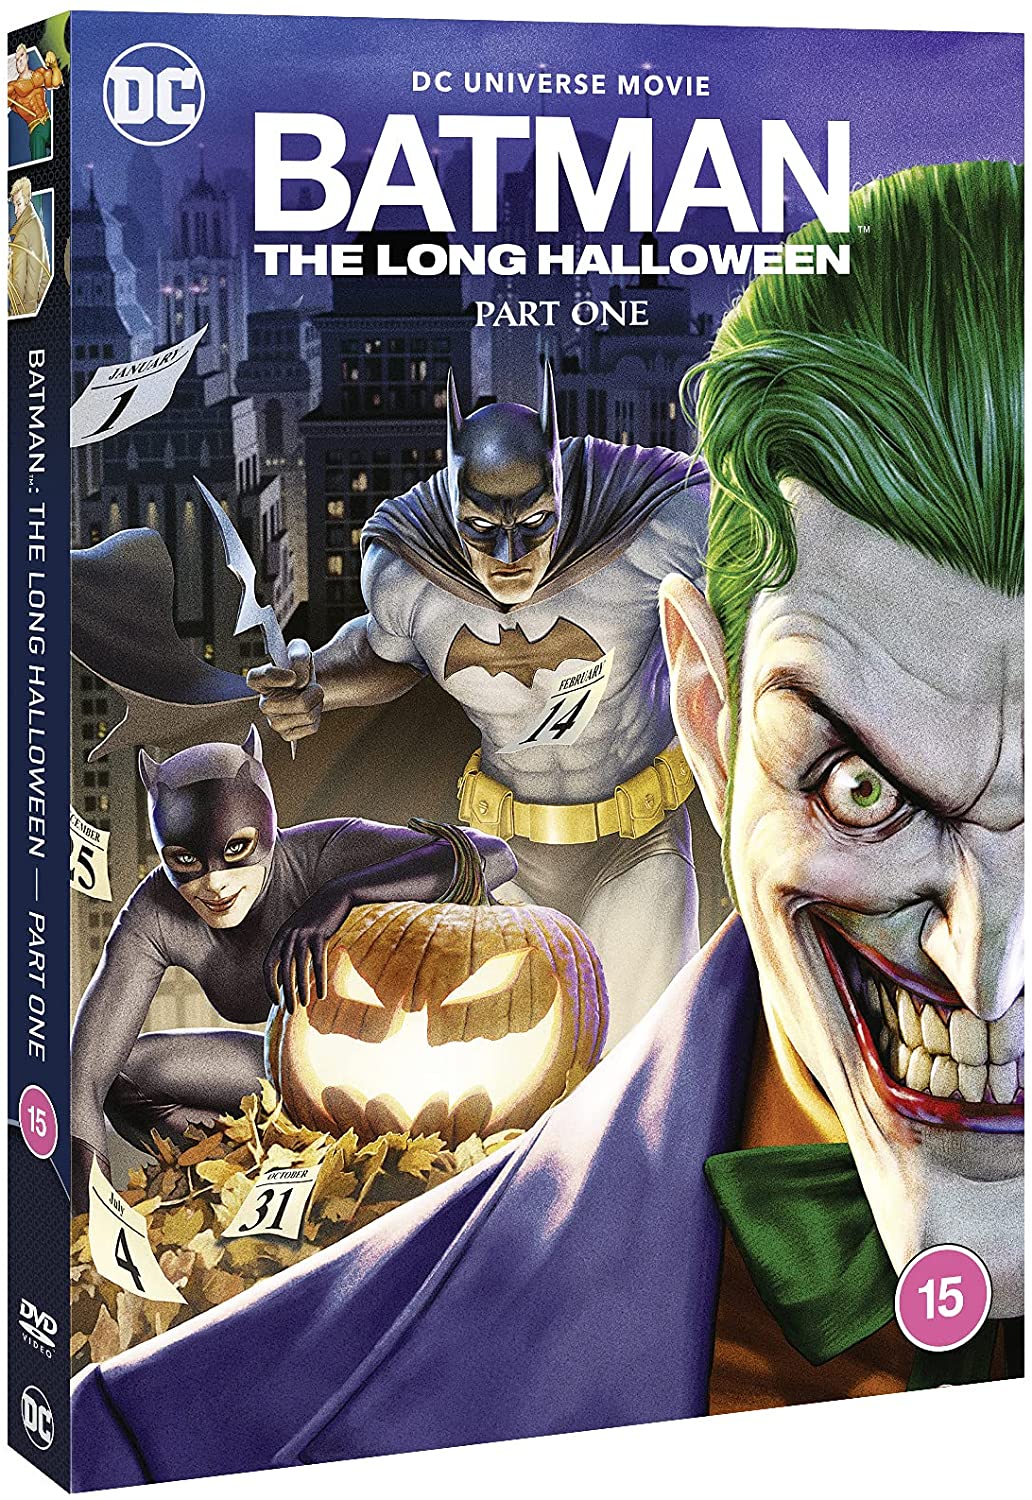 Batman: The Long Halloween Part 1 (DVD)